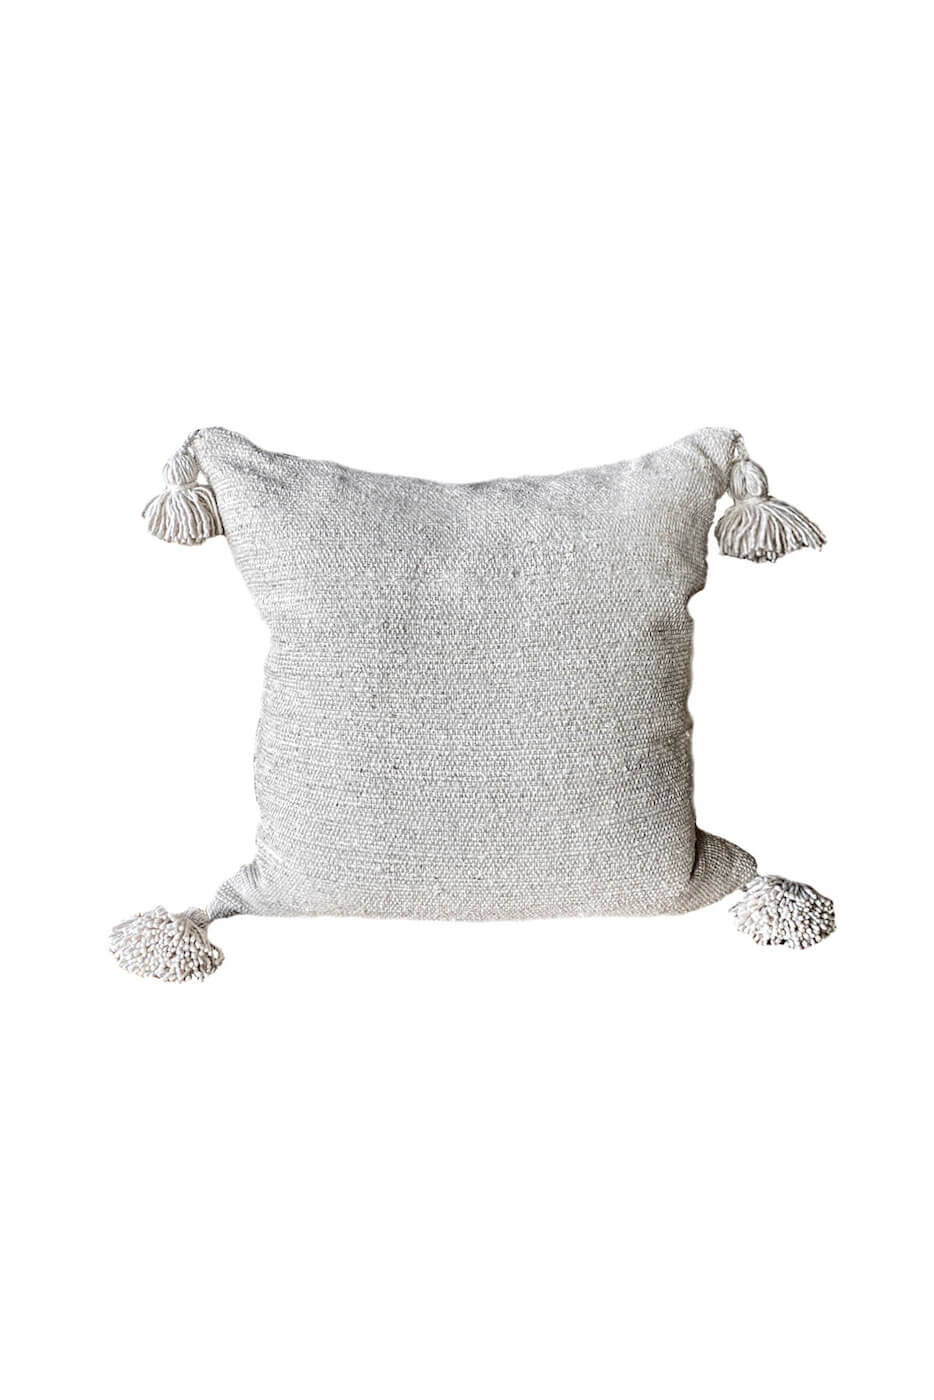 Moroccan Linen Pillow - Cream